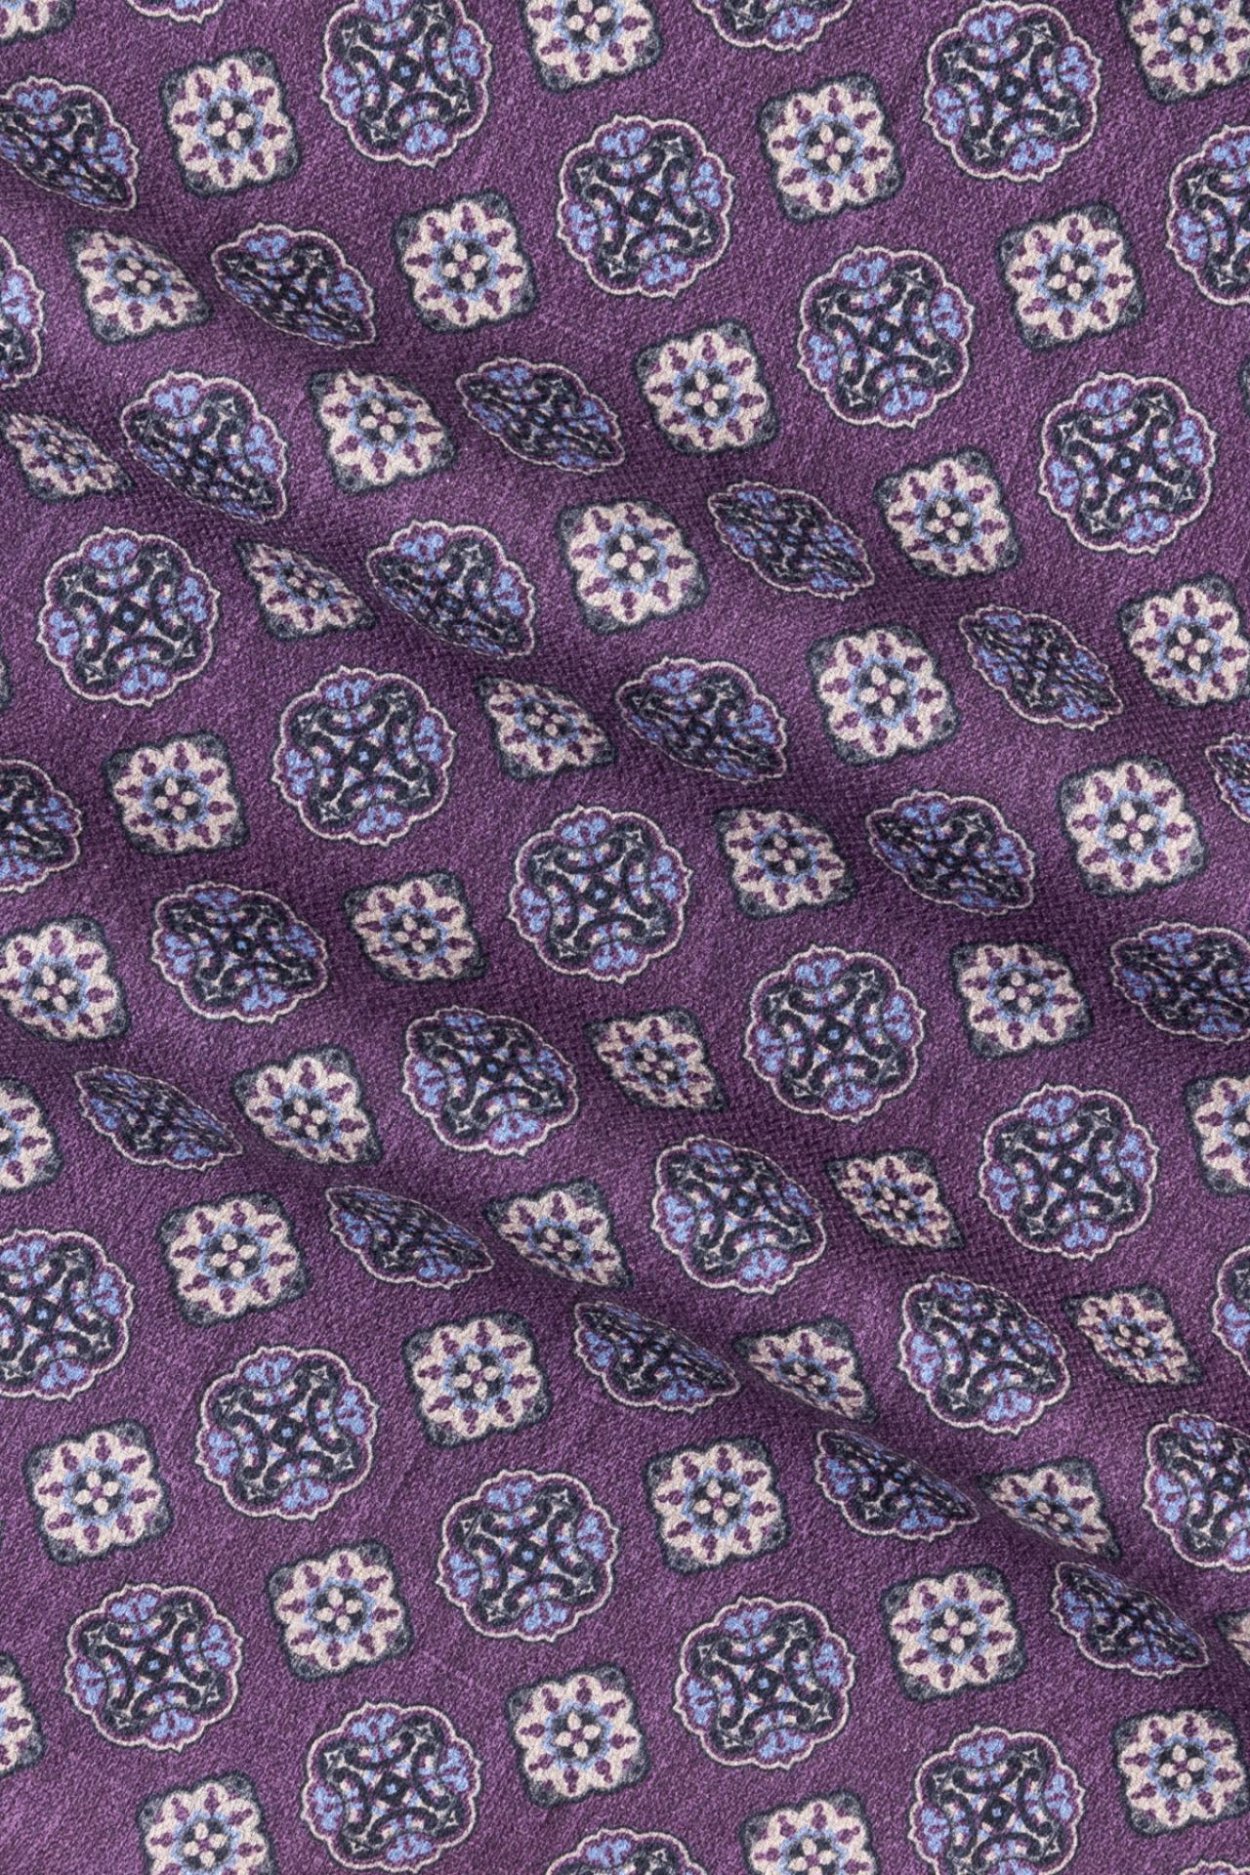 Fialový hedvábný kapesníček se vzorem